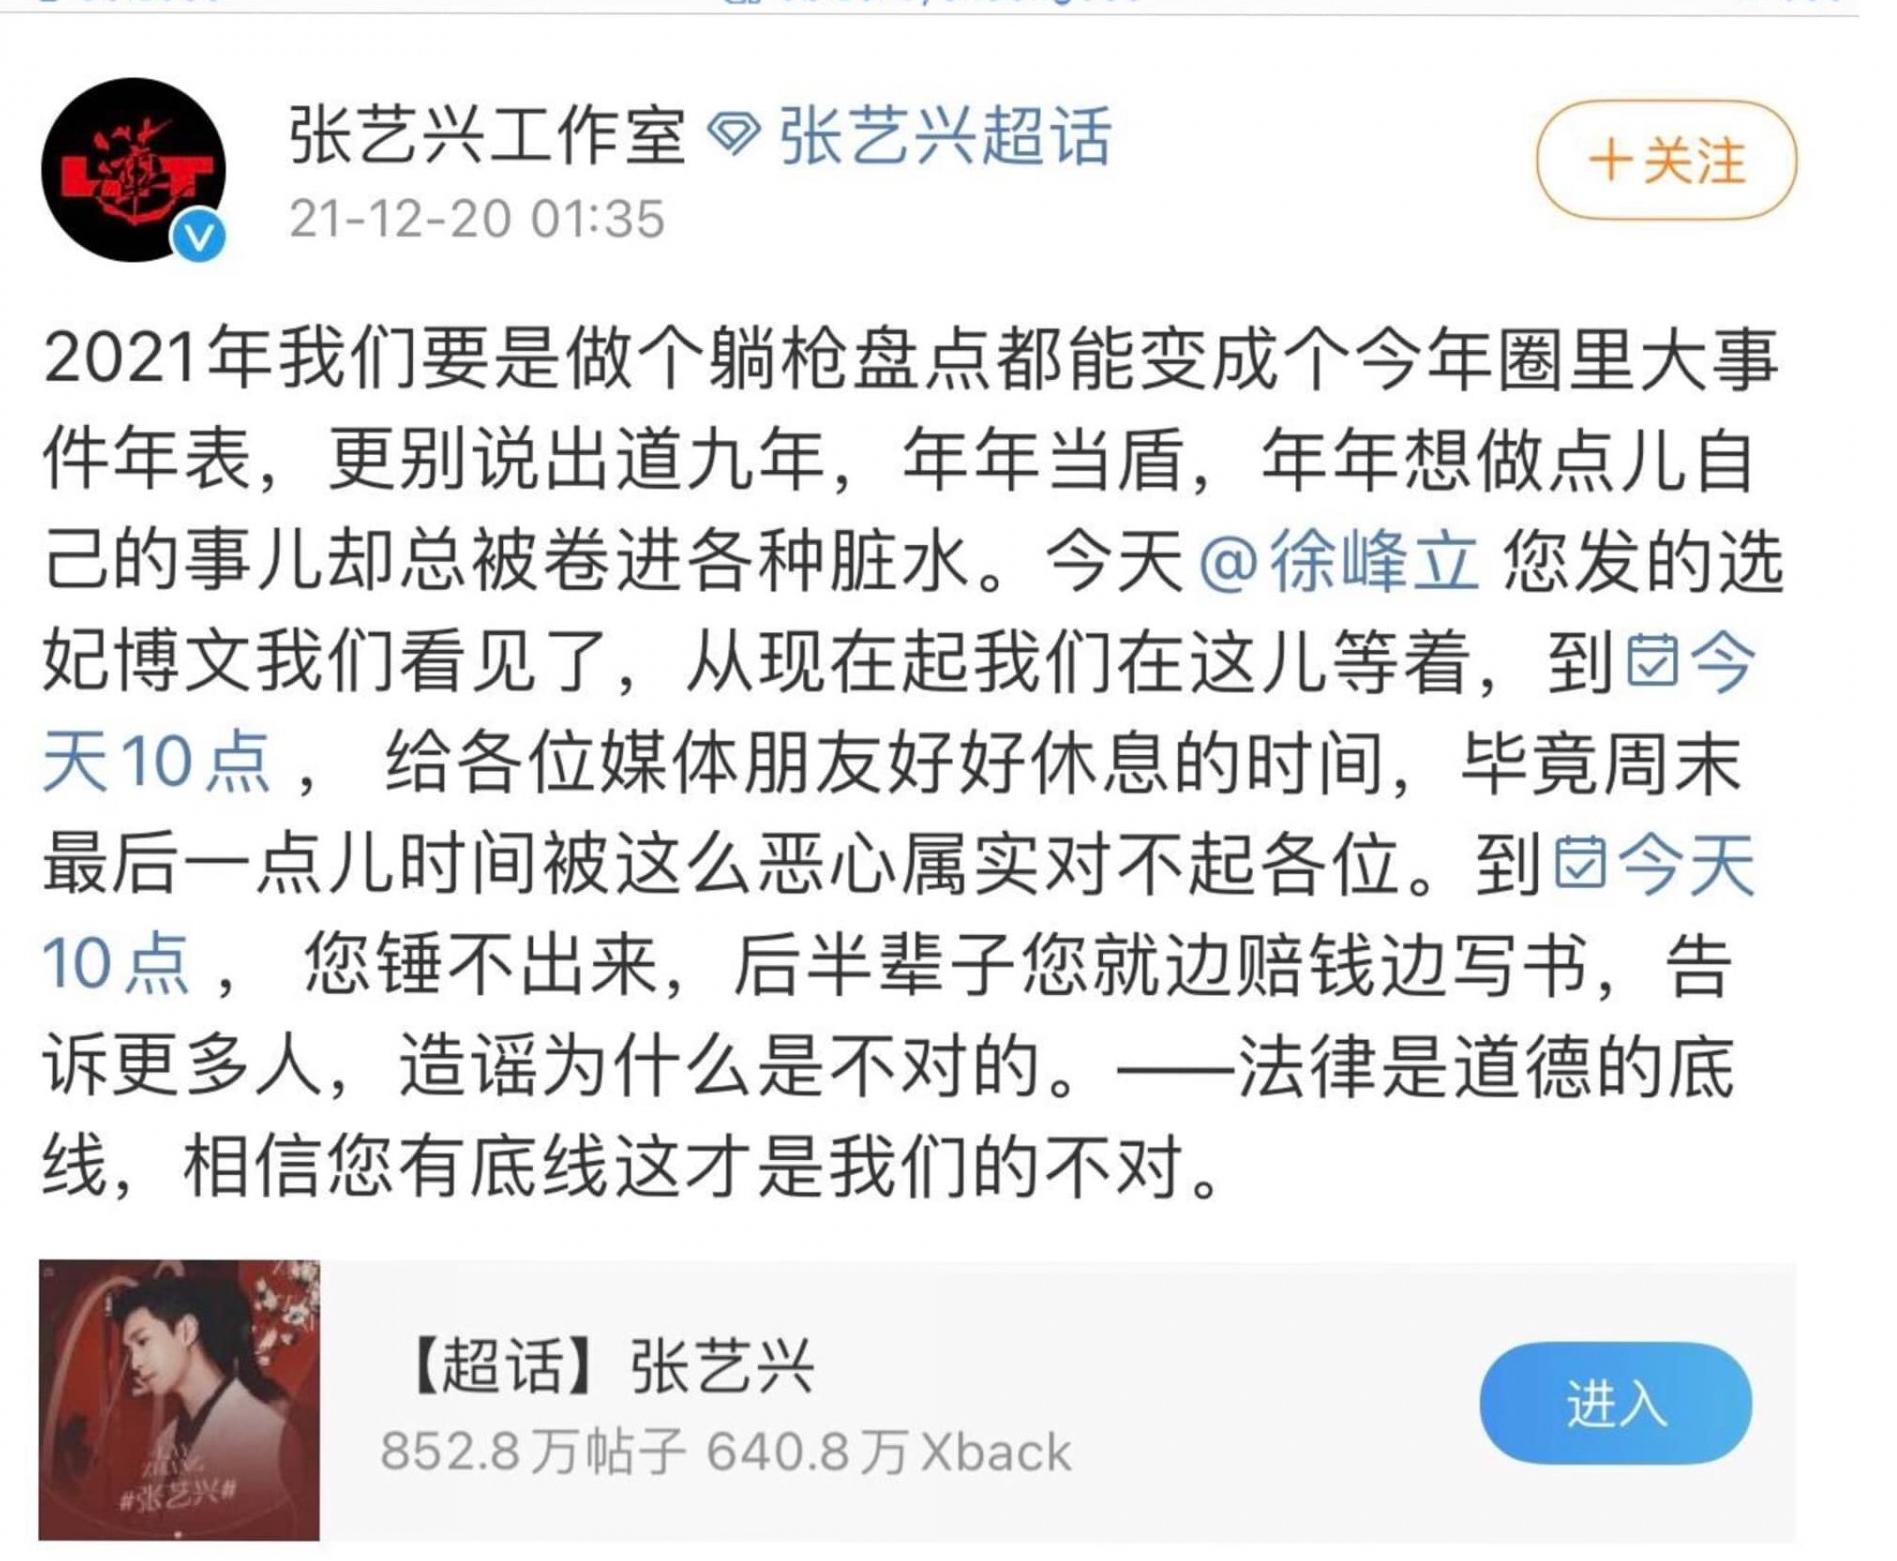 Chỉ ít lâu sau khi vướng cáo buộc, công ty quản lý của Trương Nghệ Hưng đã đăng tải bài viết phản pháo mạnh mẽ